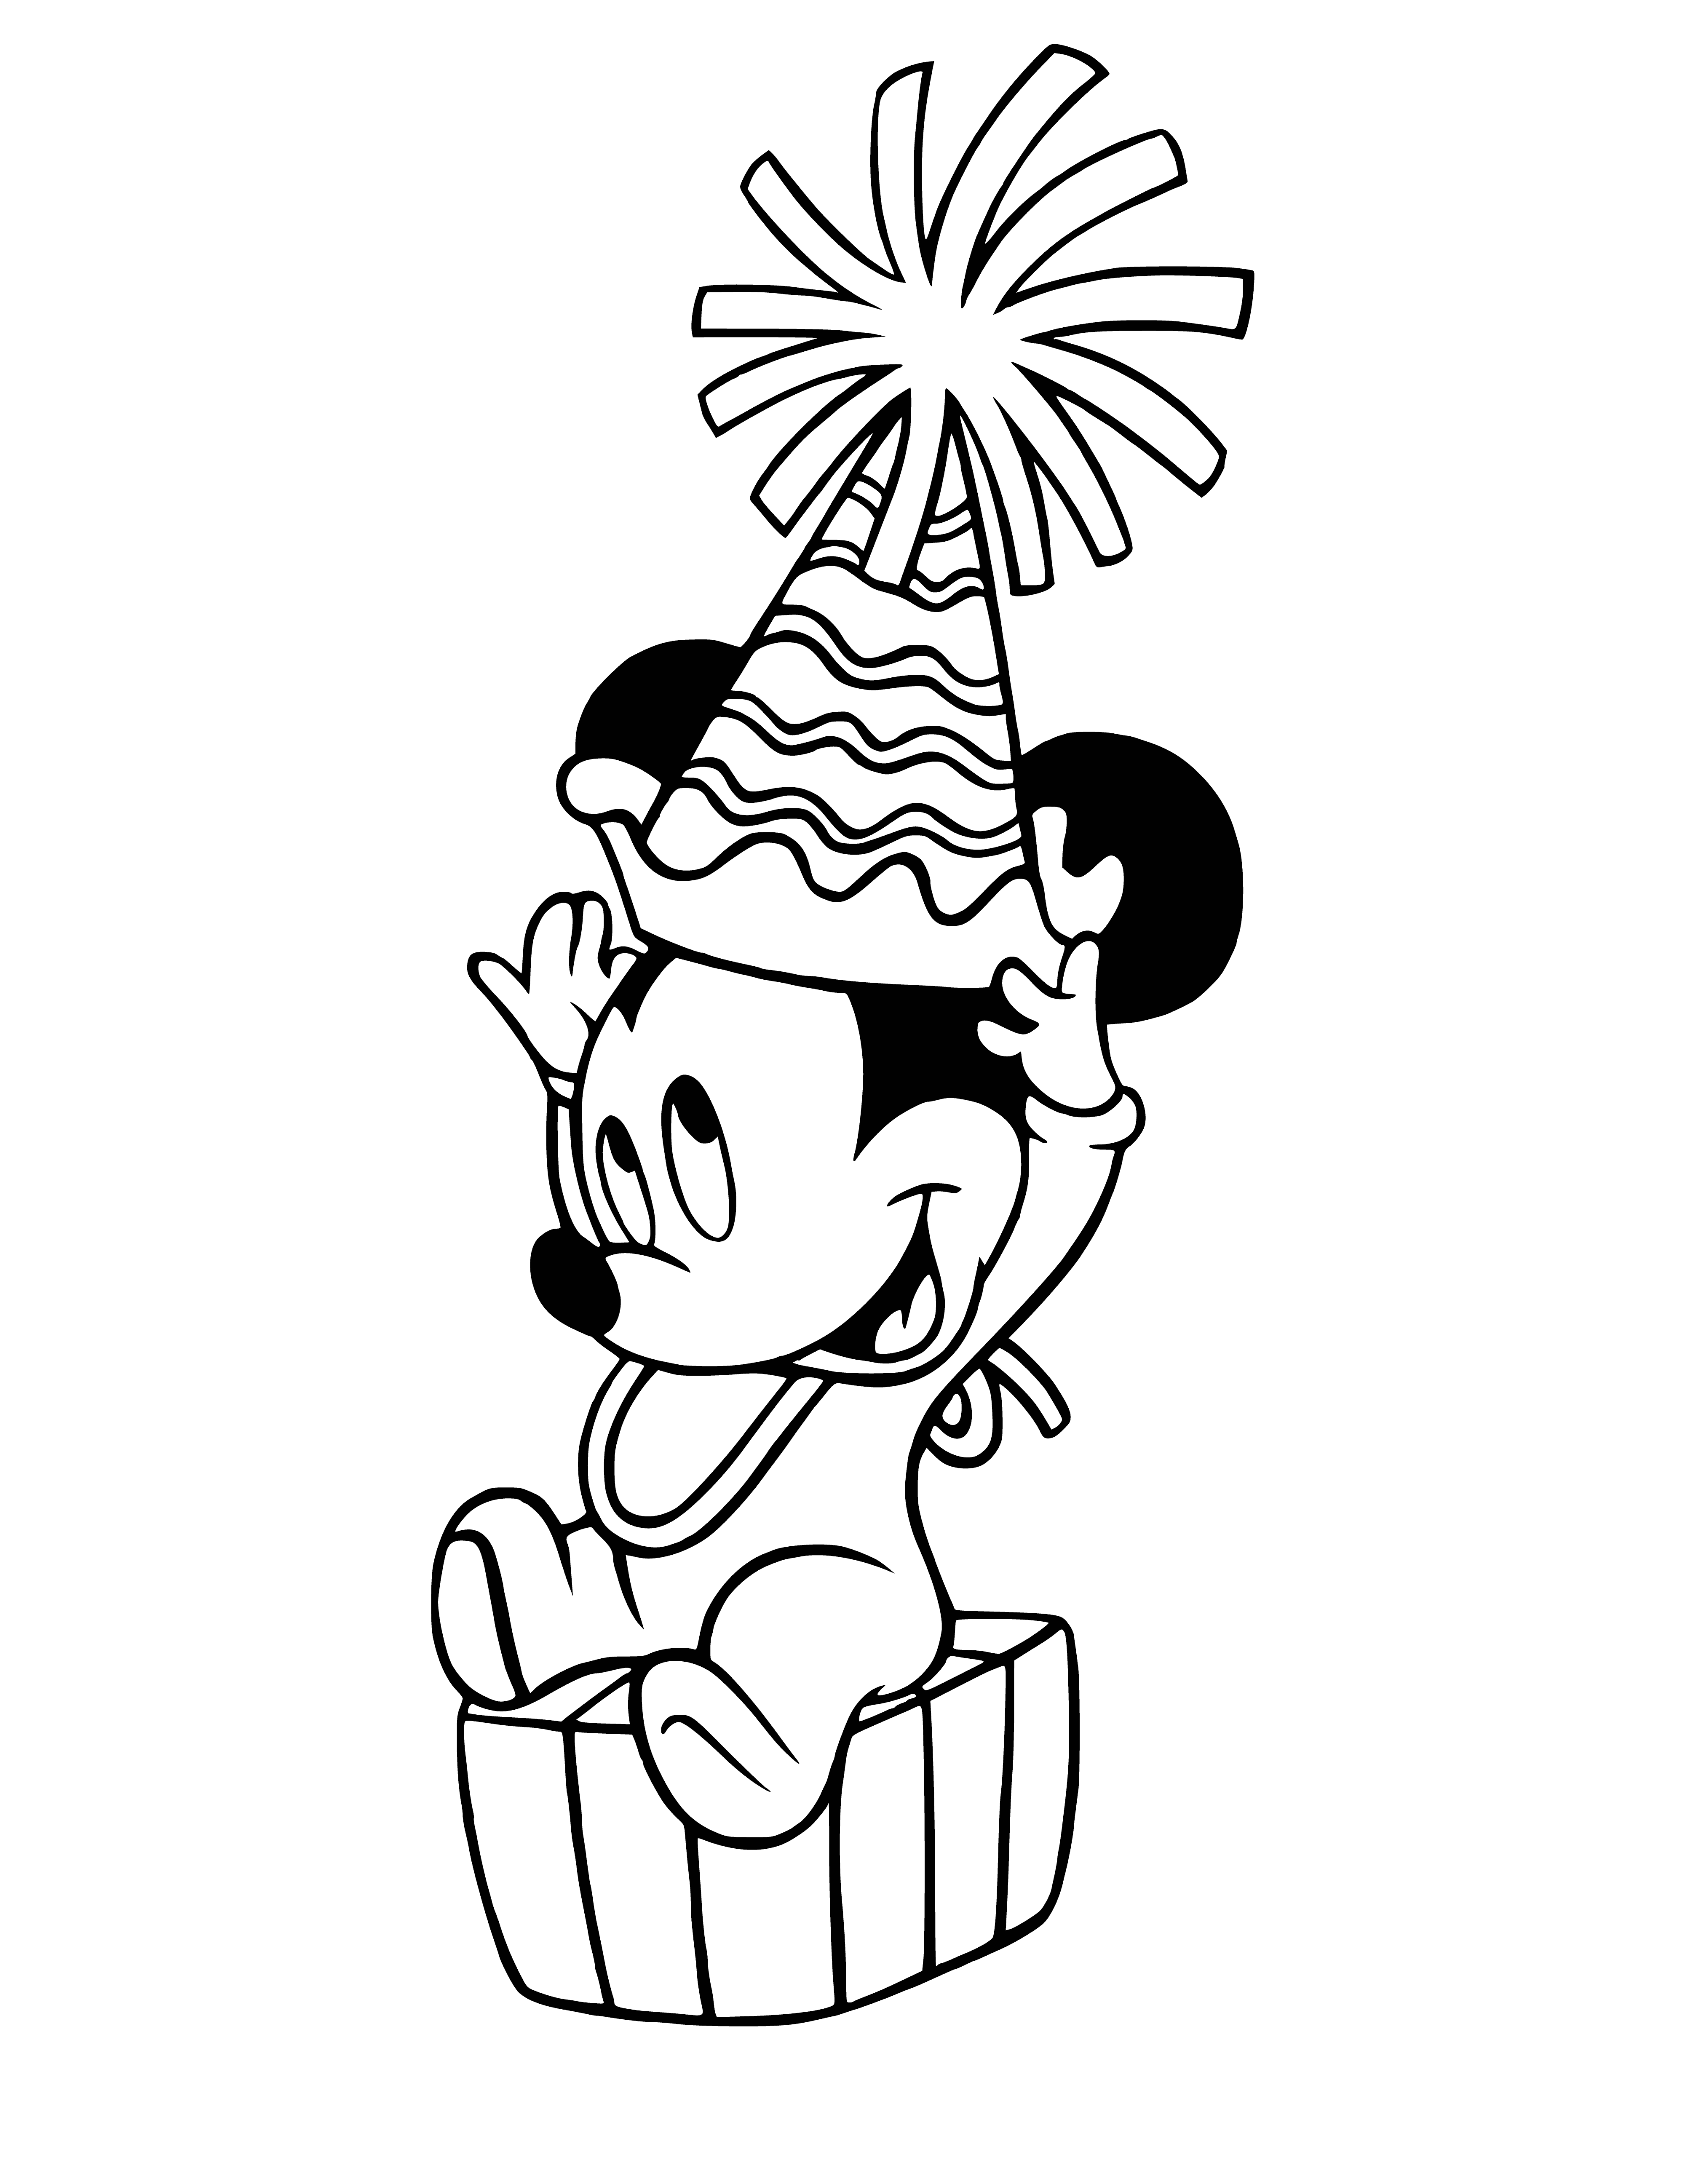 Mickey Mouse página para colorear